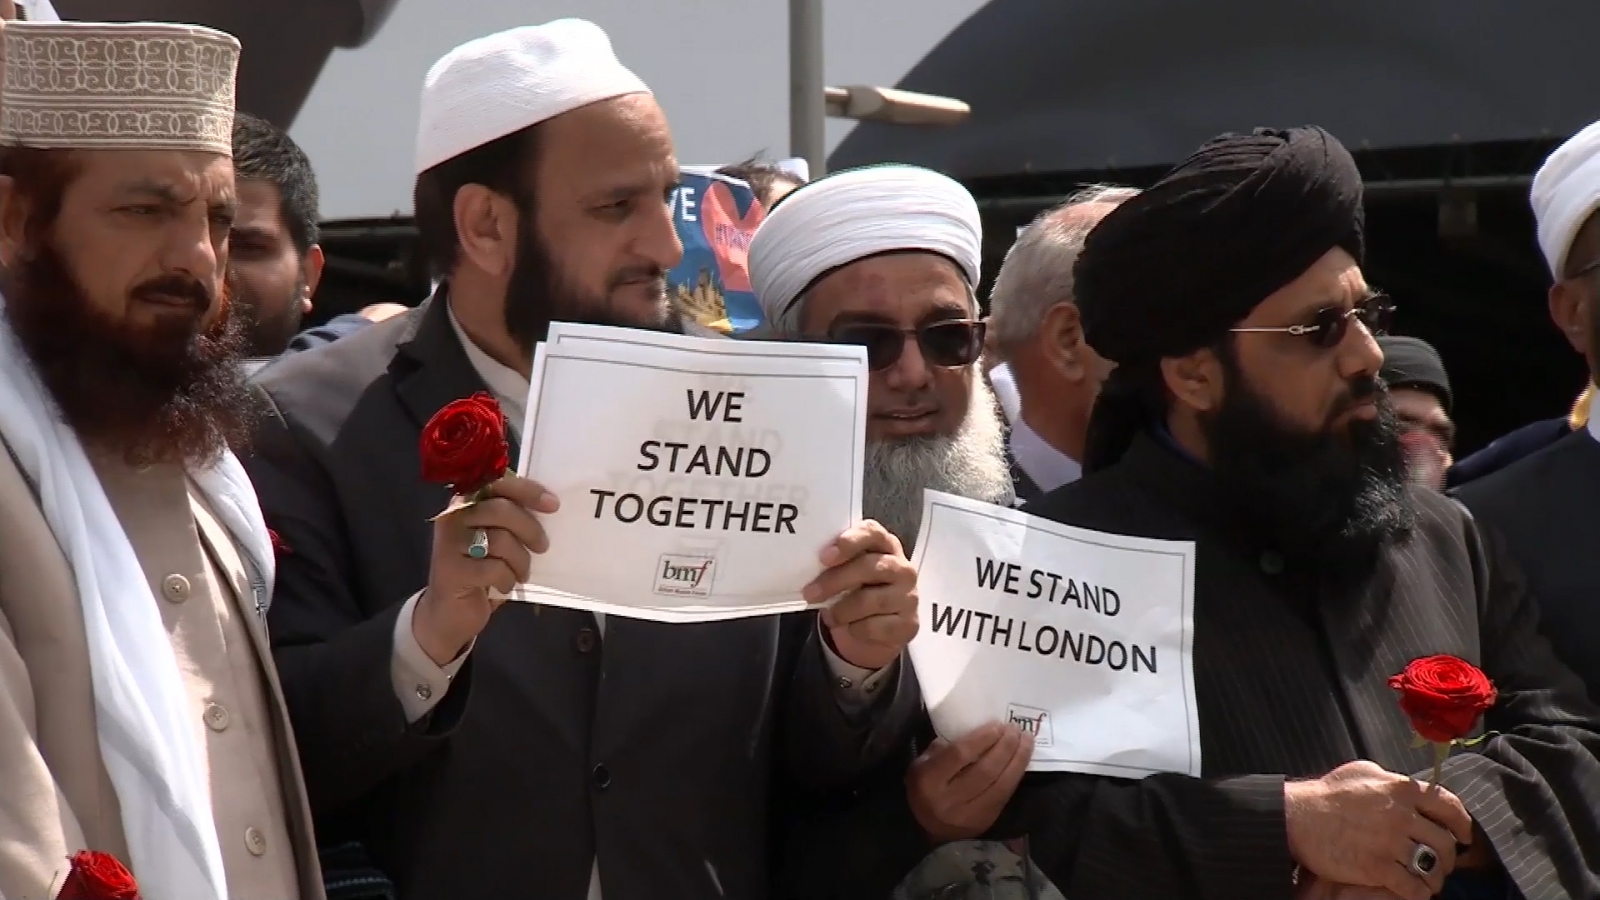 muslim-leaders-march-solidarity-against-terrorism.jpg